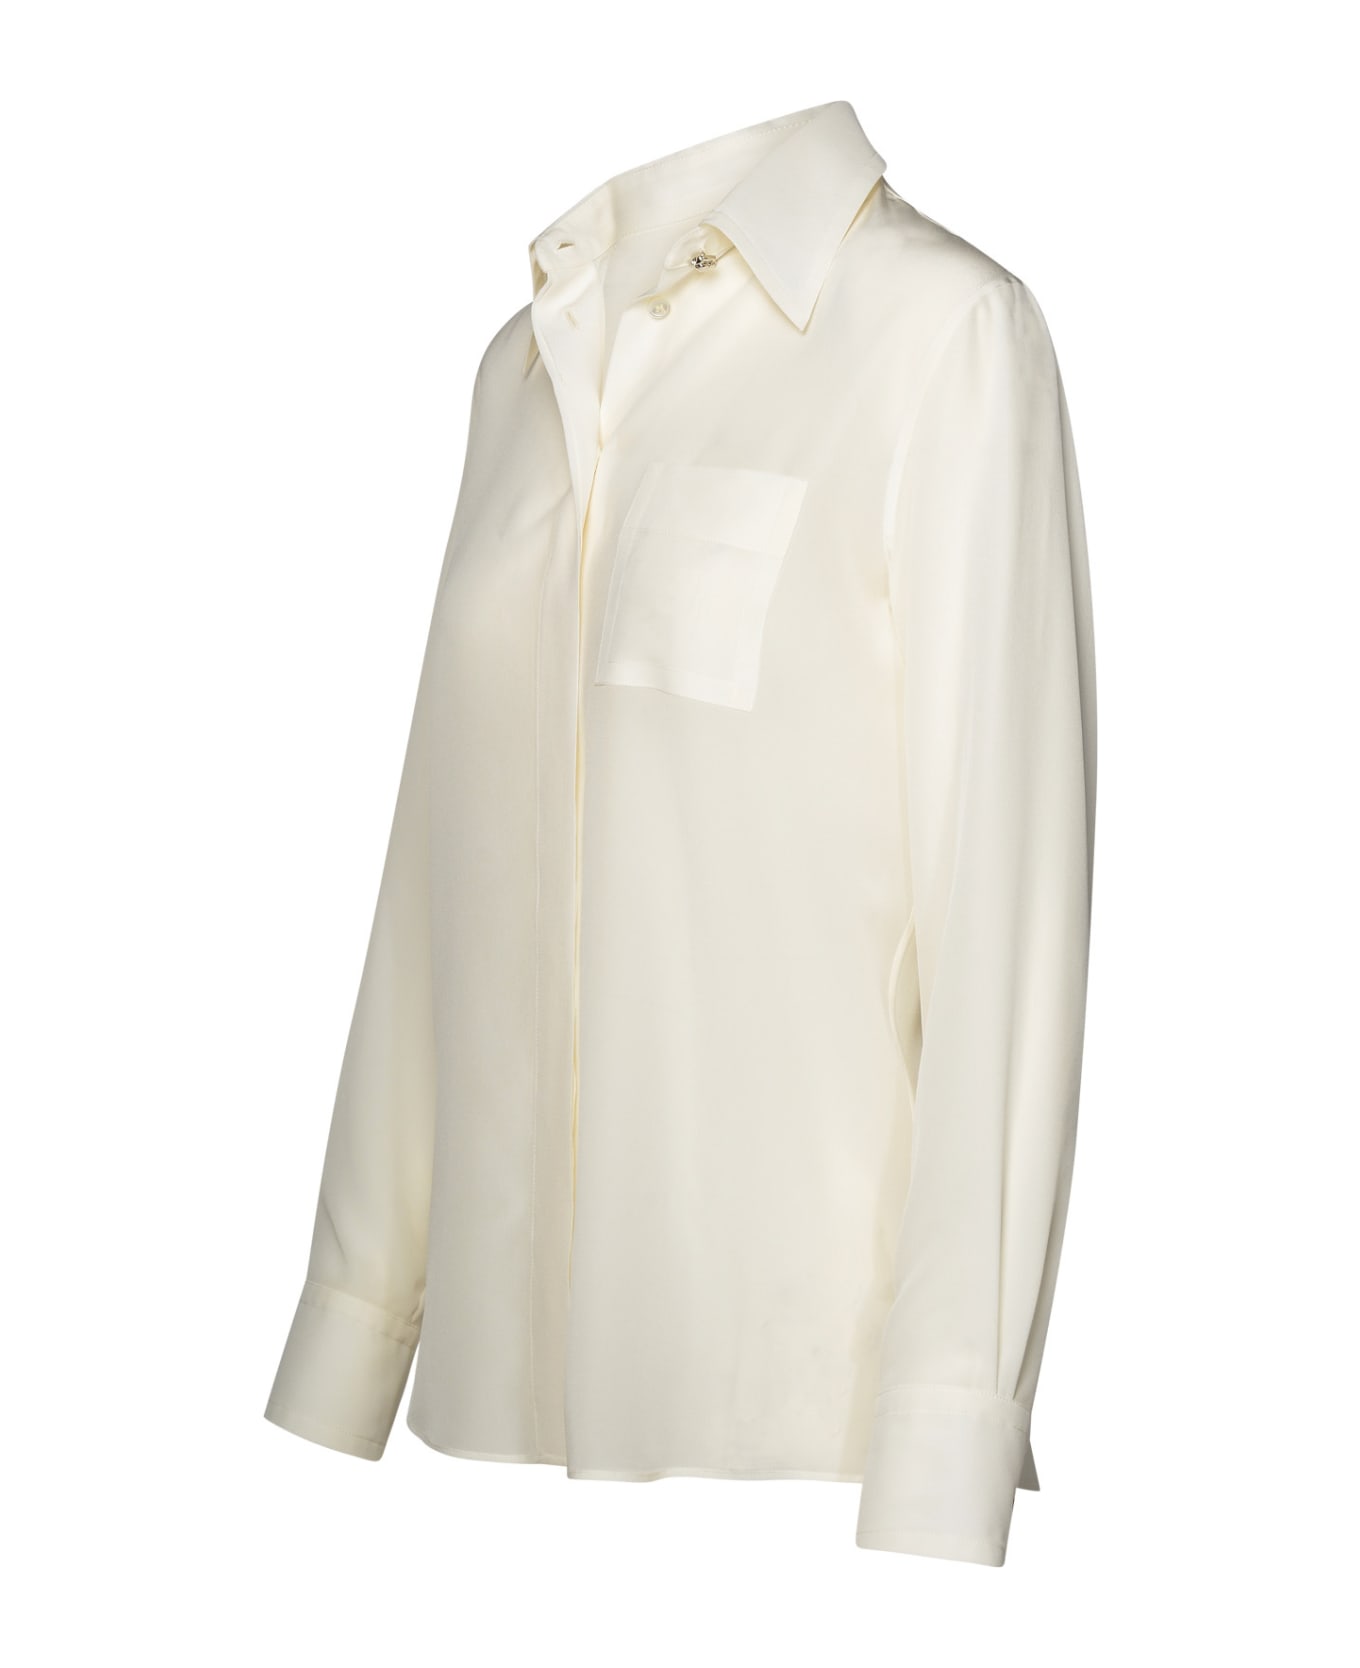 Lanvin White Silk Shirt - White